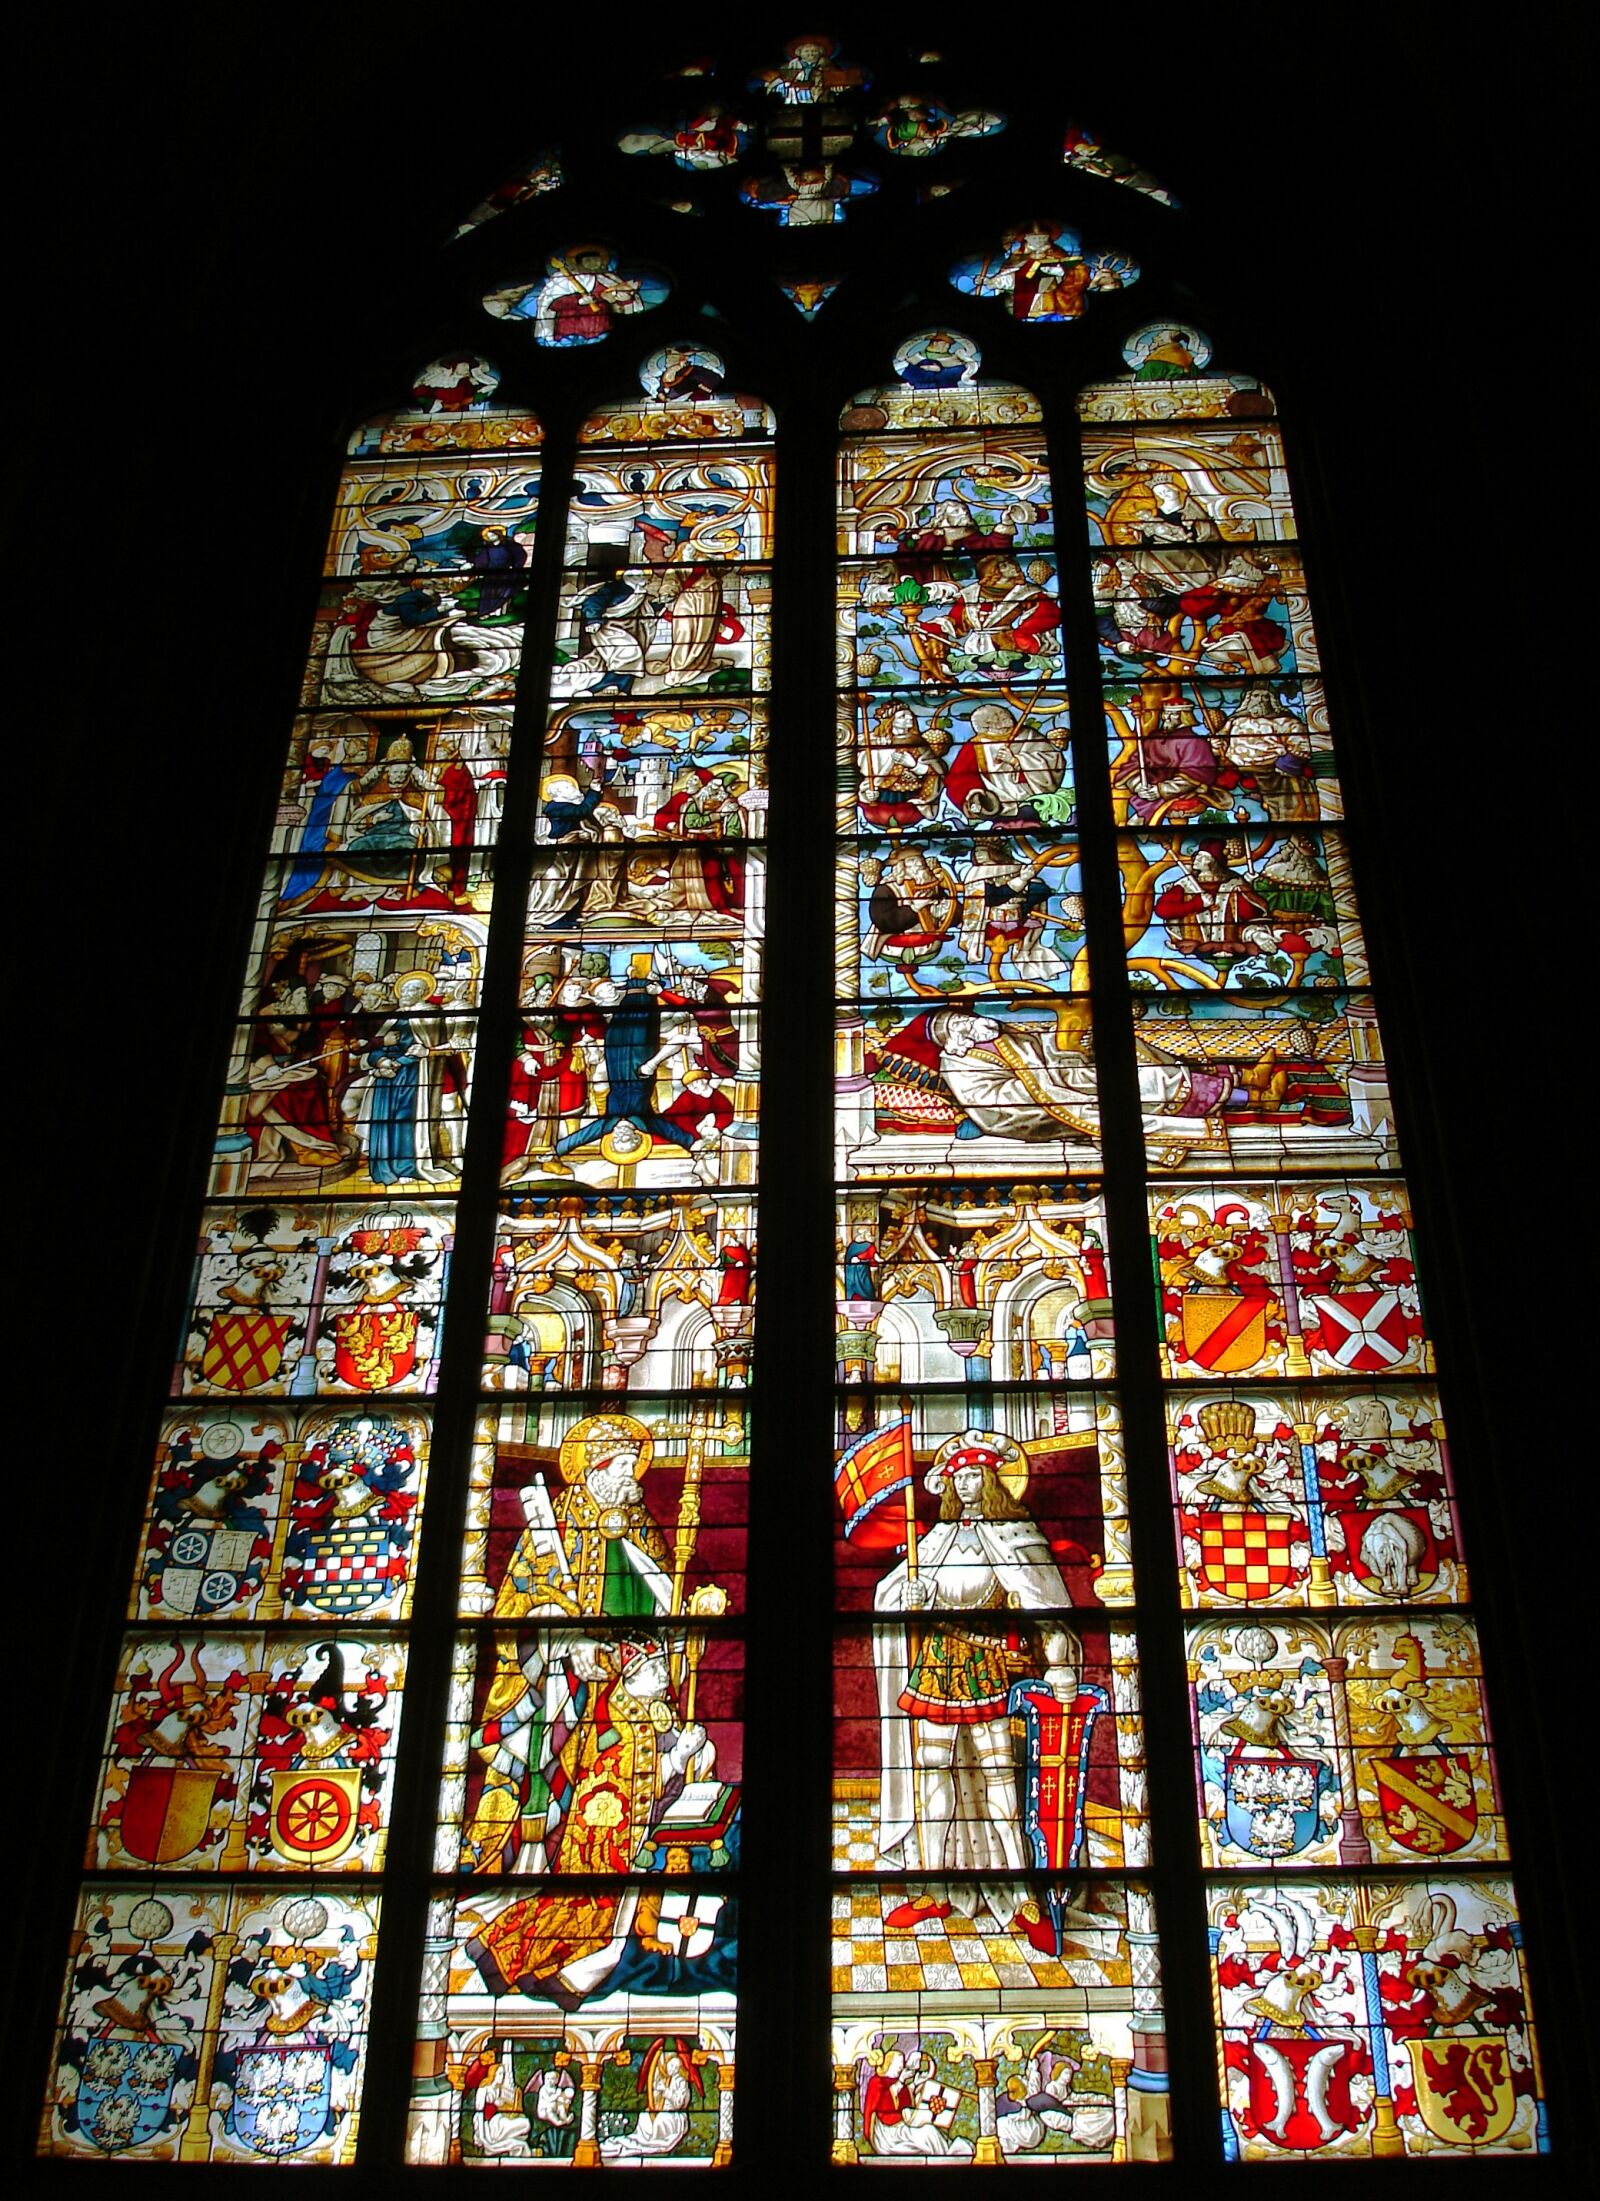 Sony DSC-W17 sample photo. Church window, lead-glass window photography